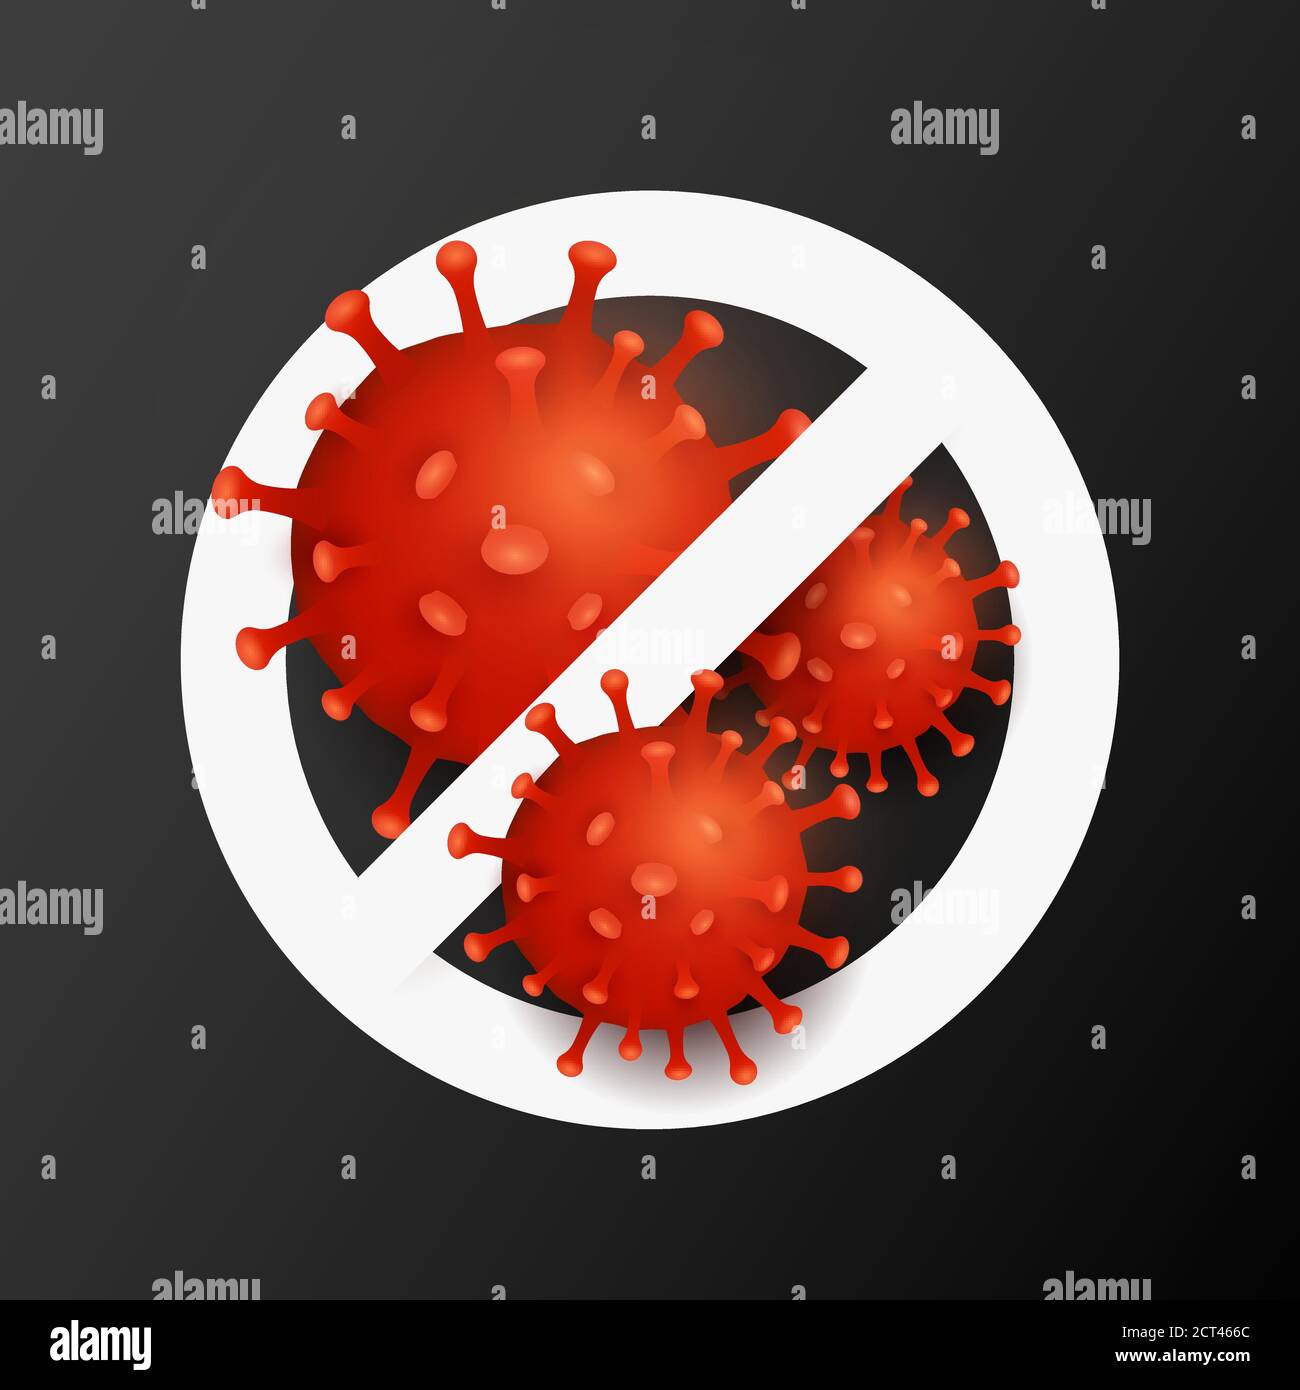 Segnale di stop con coronavirus dell'organismo patogeno 3d. Covid-19 malattia infettiva epidemica. Per il vostro disegno medico. Illustrazione vettoriale. EPS 10 Illustrazione Vettoriale